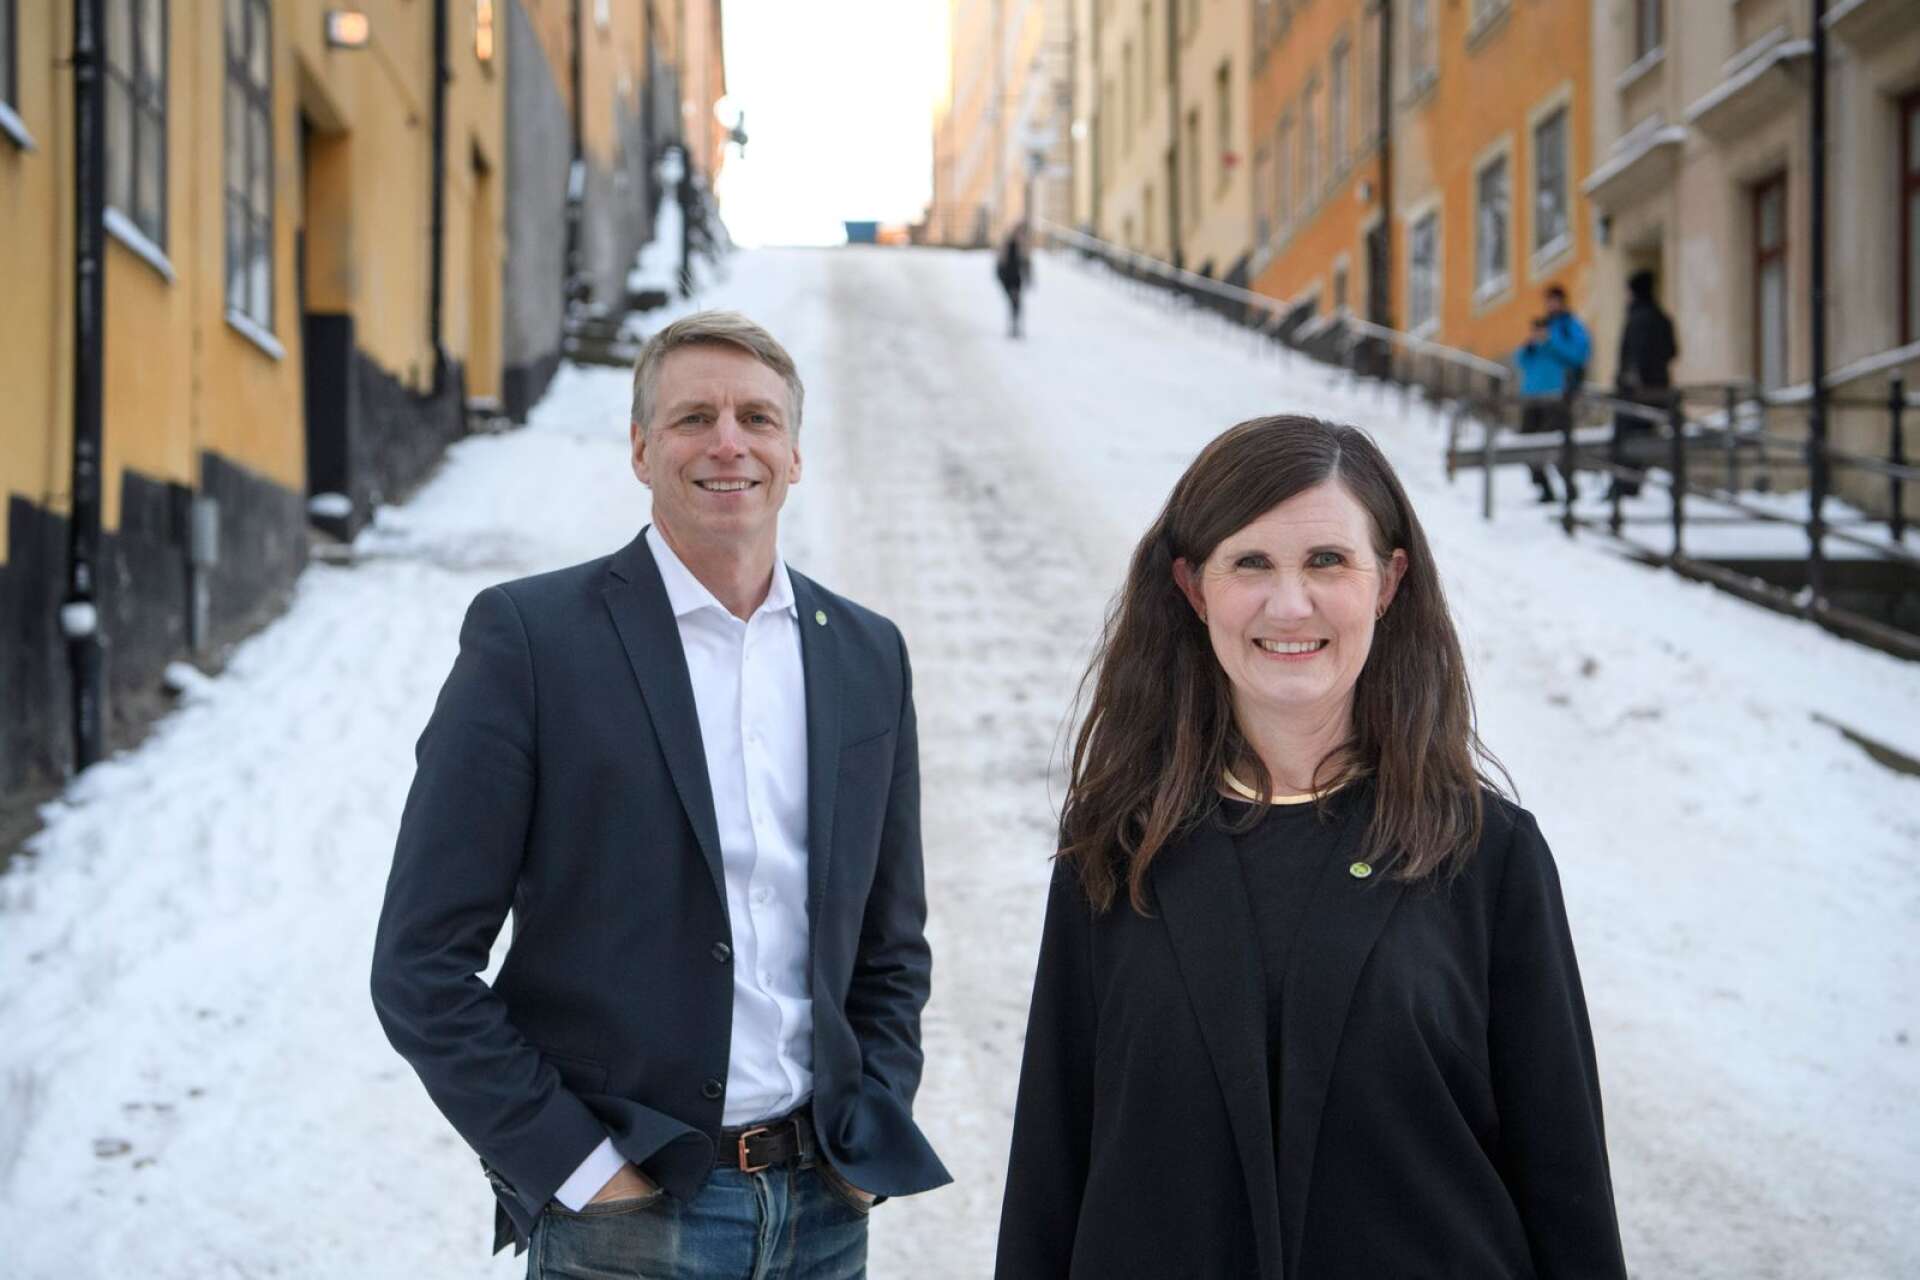 Språkrören Per Bolund och Märta Stenevi är två av deltagarna på Miljöpartiets kongress i Örebro. Bilden är dock tagen på annan plats.